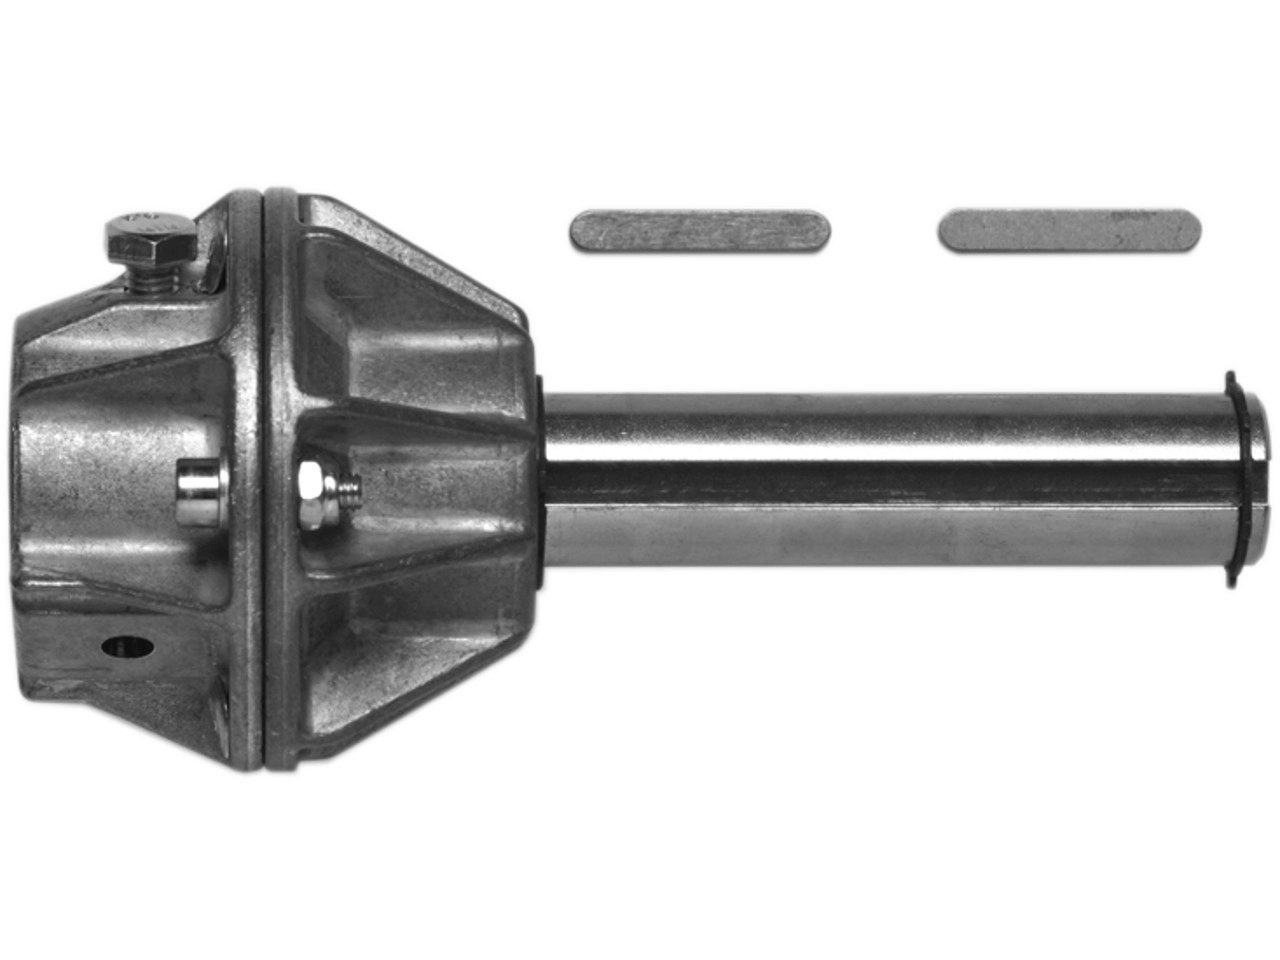 Wellenadapter Steckwelle 25.4mm mit Adapter für Federwelle 25.0mm mit Nut